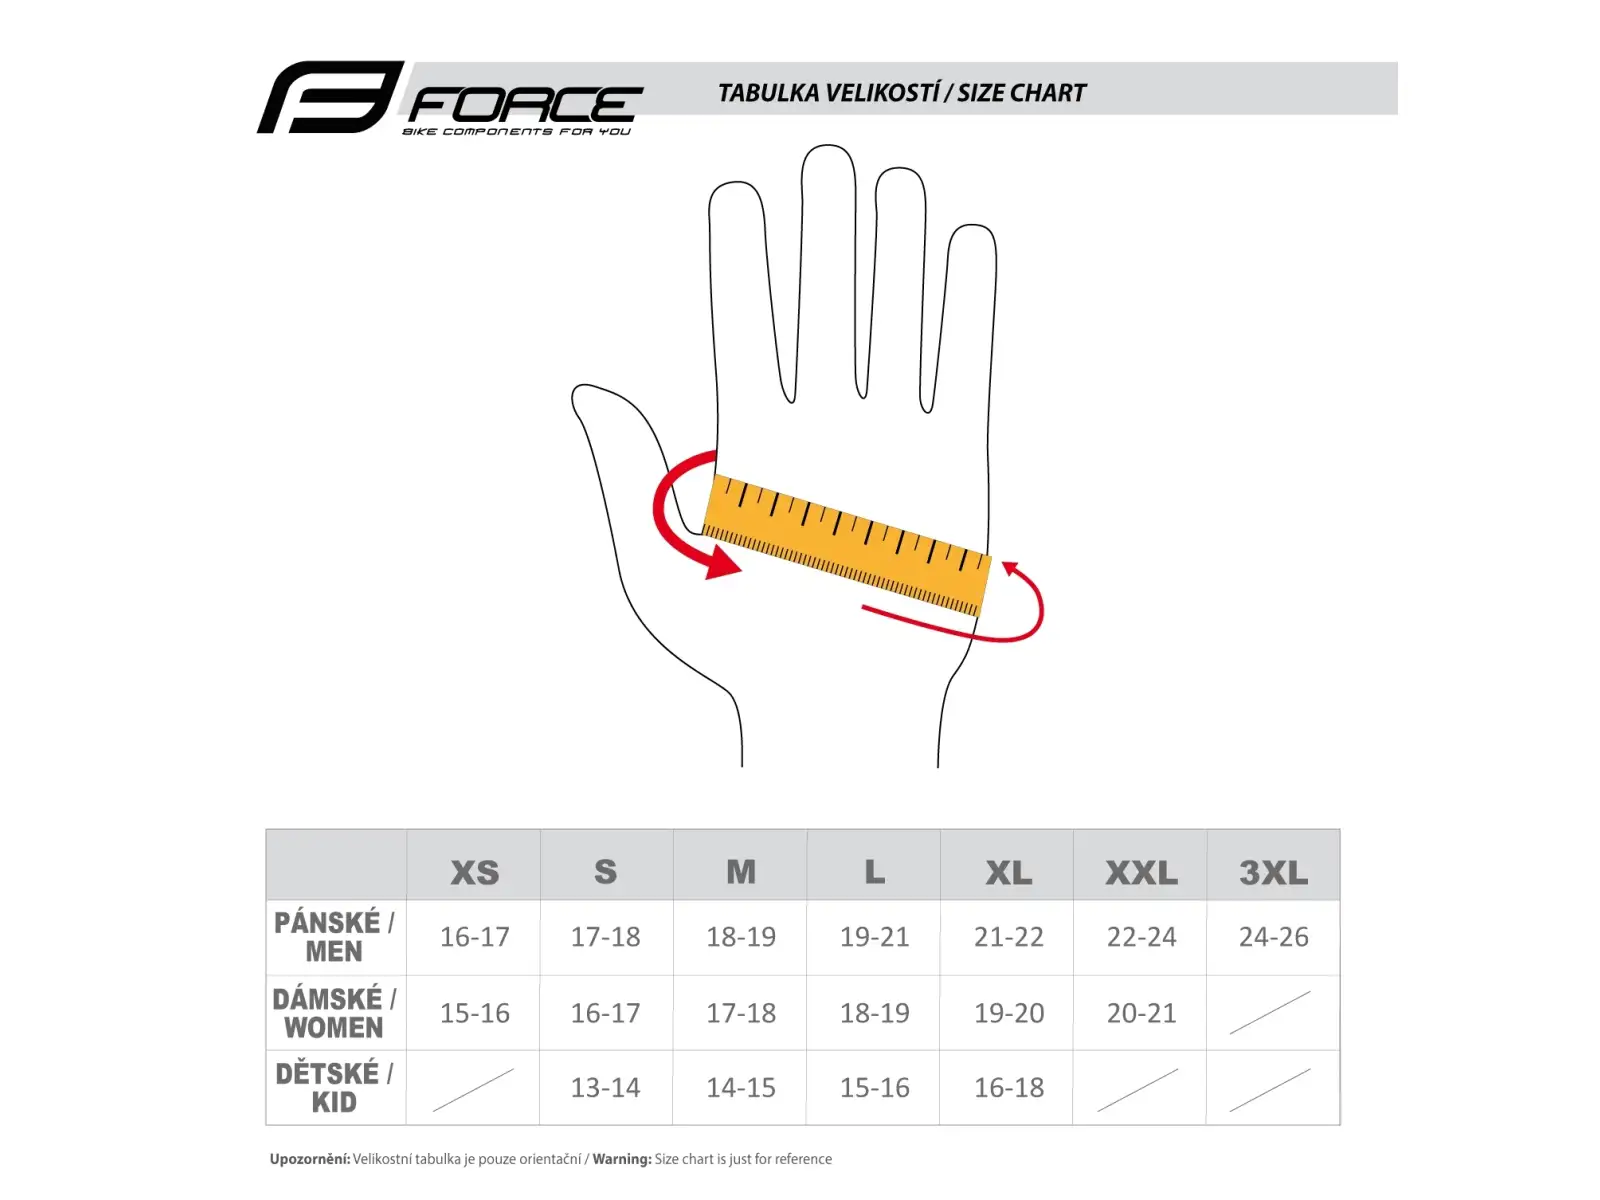 Force Angle MTB rukavice růžová/černá